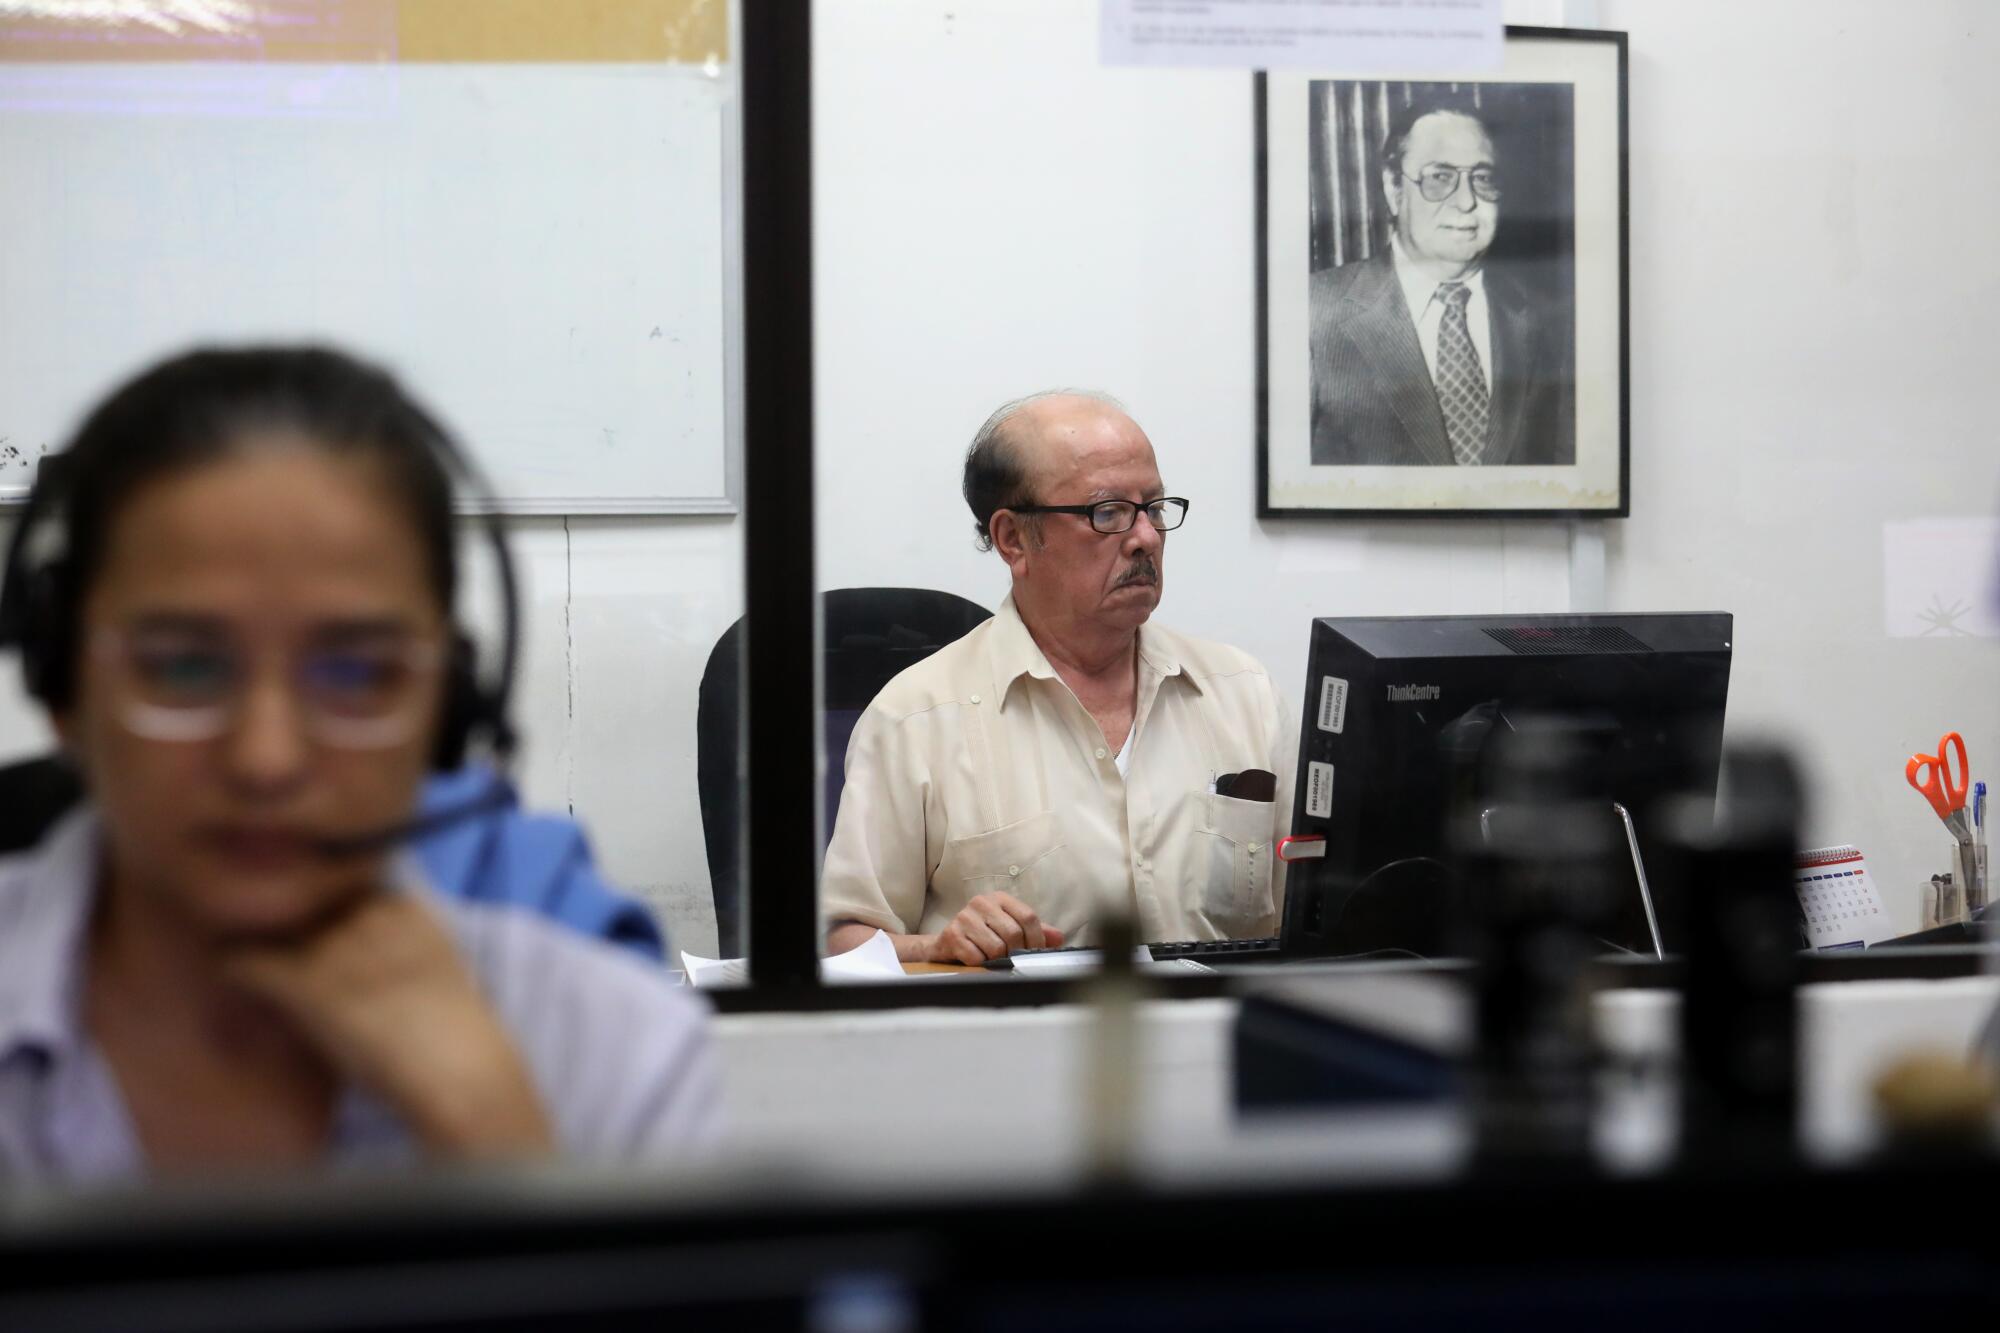 El editor de la página editorial Luis Sánchez Sancho trabajando. Detrás de él hay un retrato de Pedro Joaquín Chamorro, el antiguo editor de La Prensa que fue asesinado en 1978.